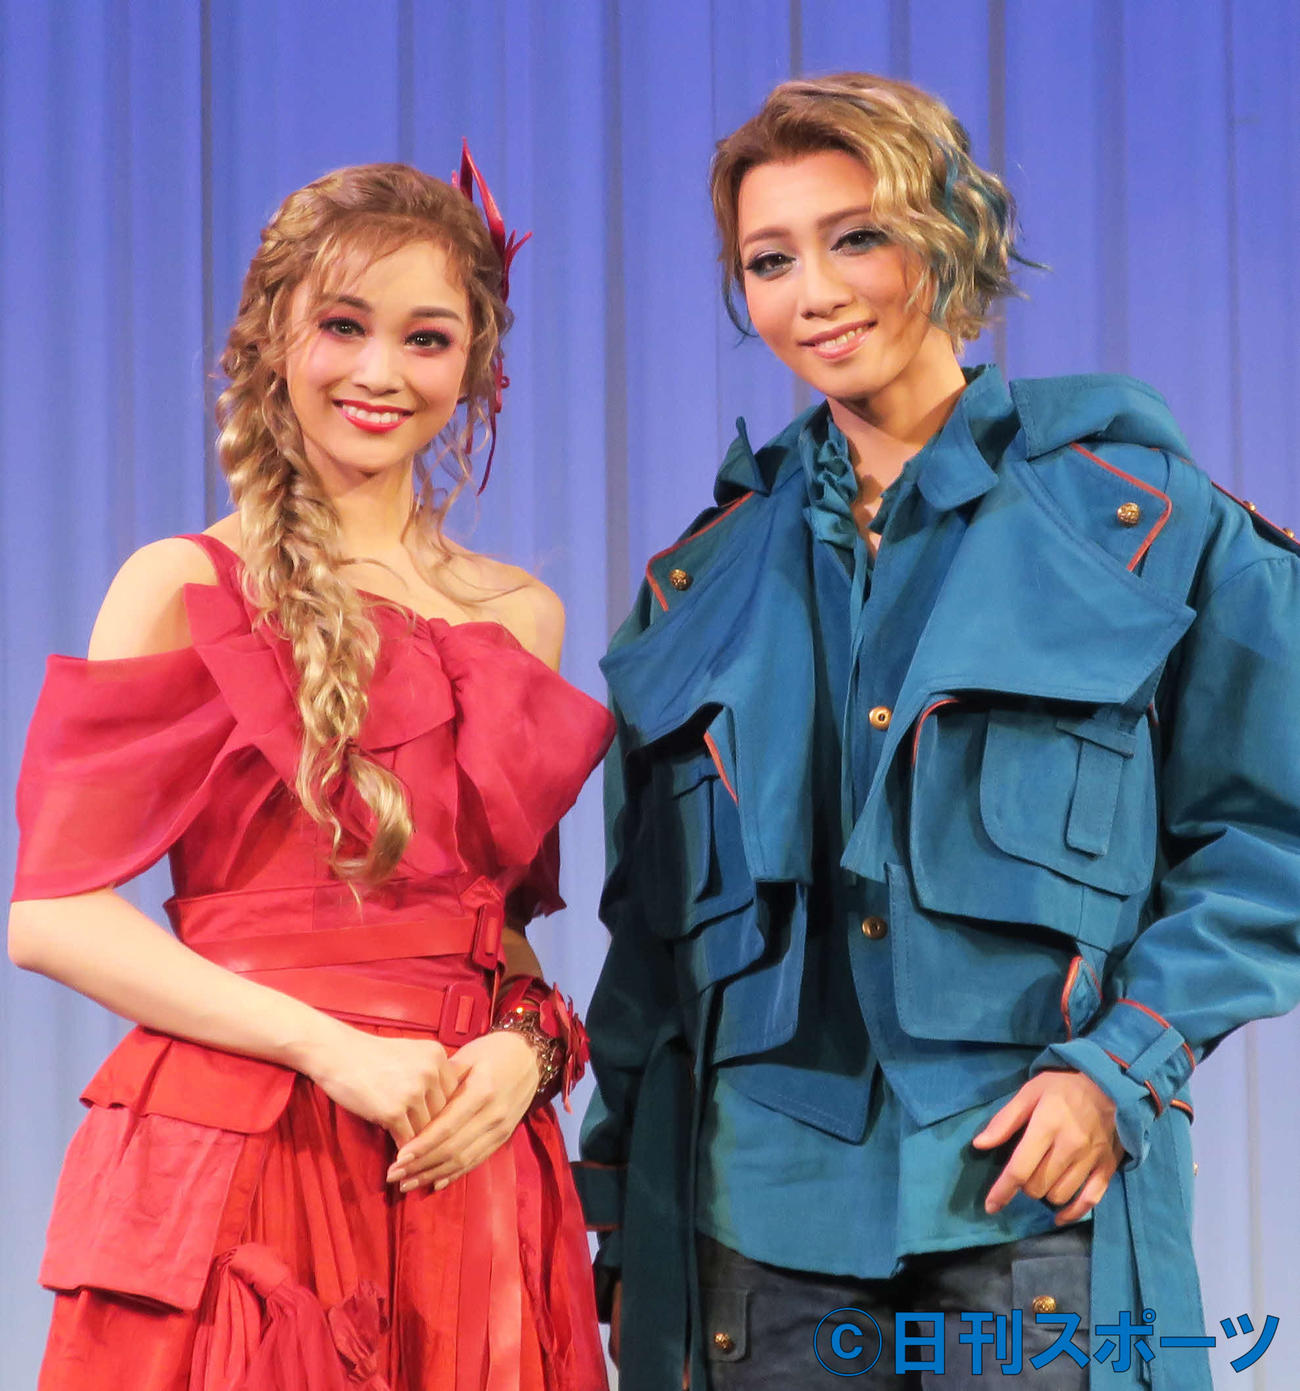 宝塚歌劇星組公演「ロミオとジュリエット」の制作発表で。トップスターの礼真琴（右）と娘役トップの舞空瞳